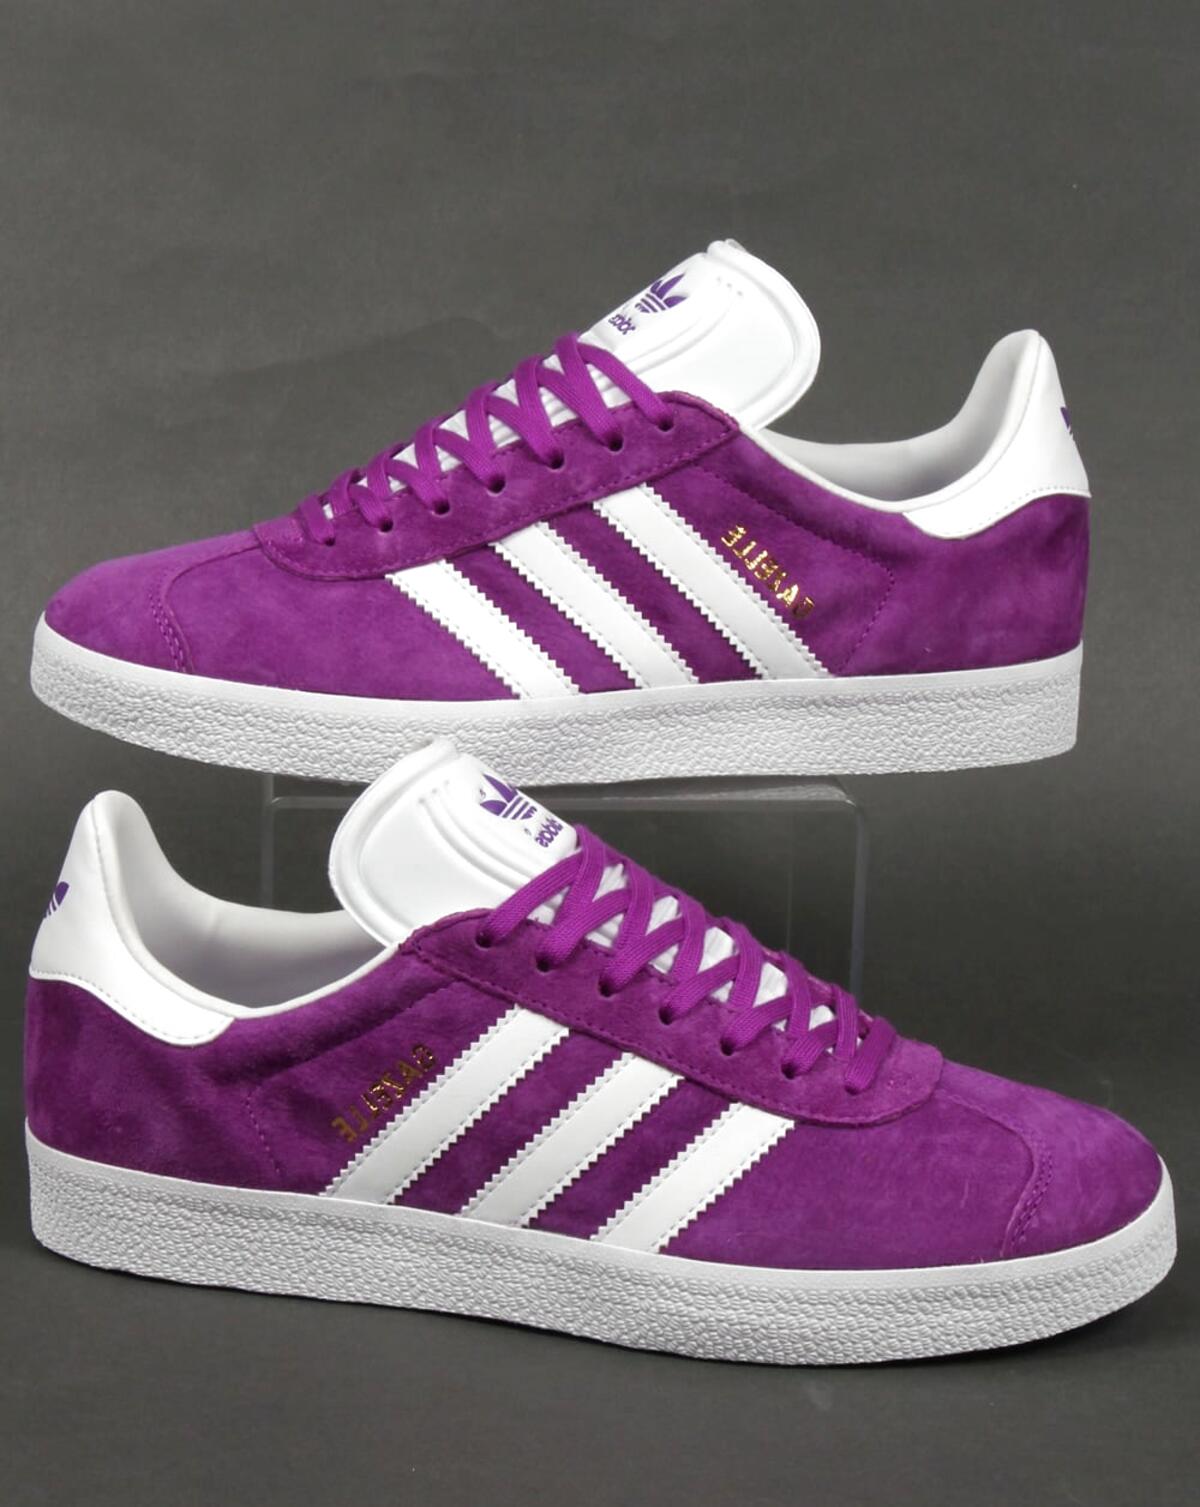 Adidas Gazelle Purple for sale in UK 